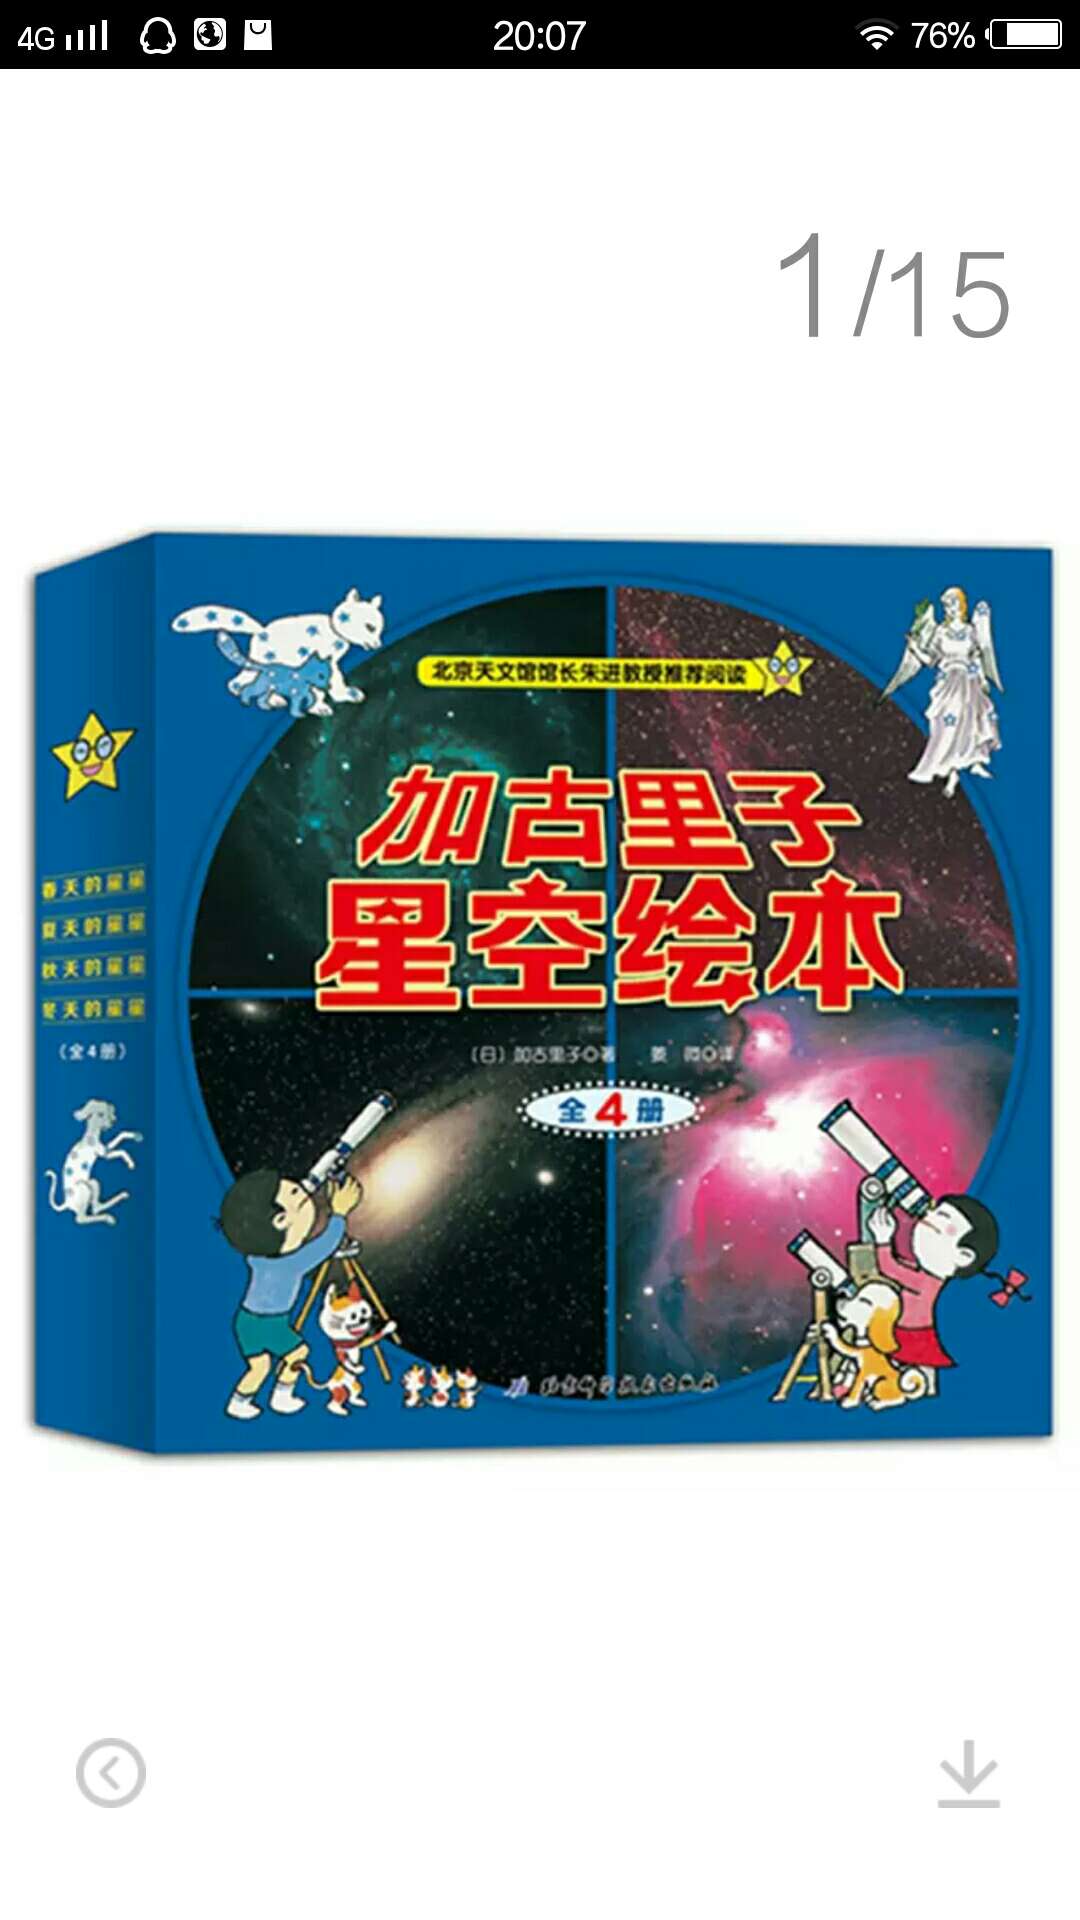 很好的一套星空启蒙书籍，让孩子畅游太空。了解太空，探索太空。